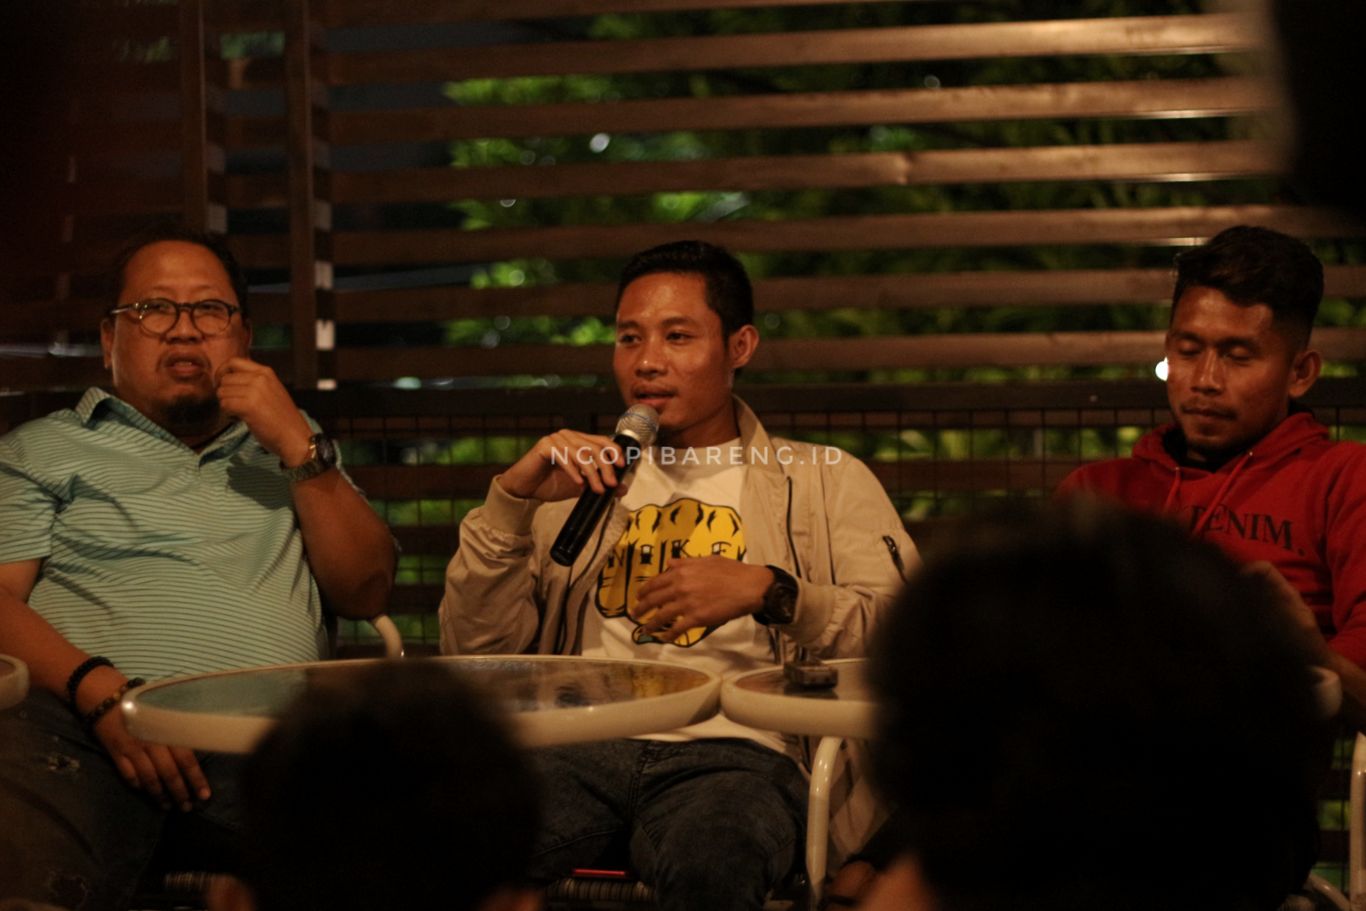 Dari kiri: Mully Munial, Evan Dimas, Andik Vermansah. (foto: Haris/ngopibareng.id)